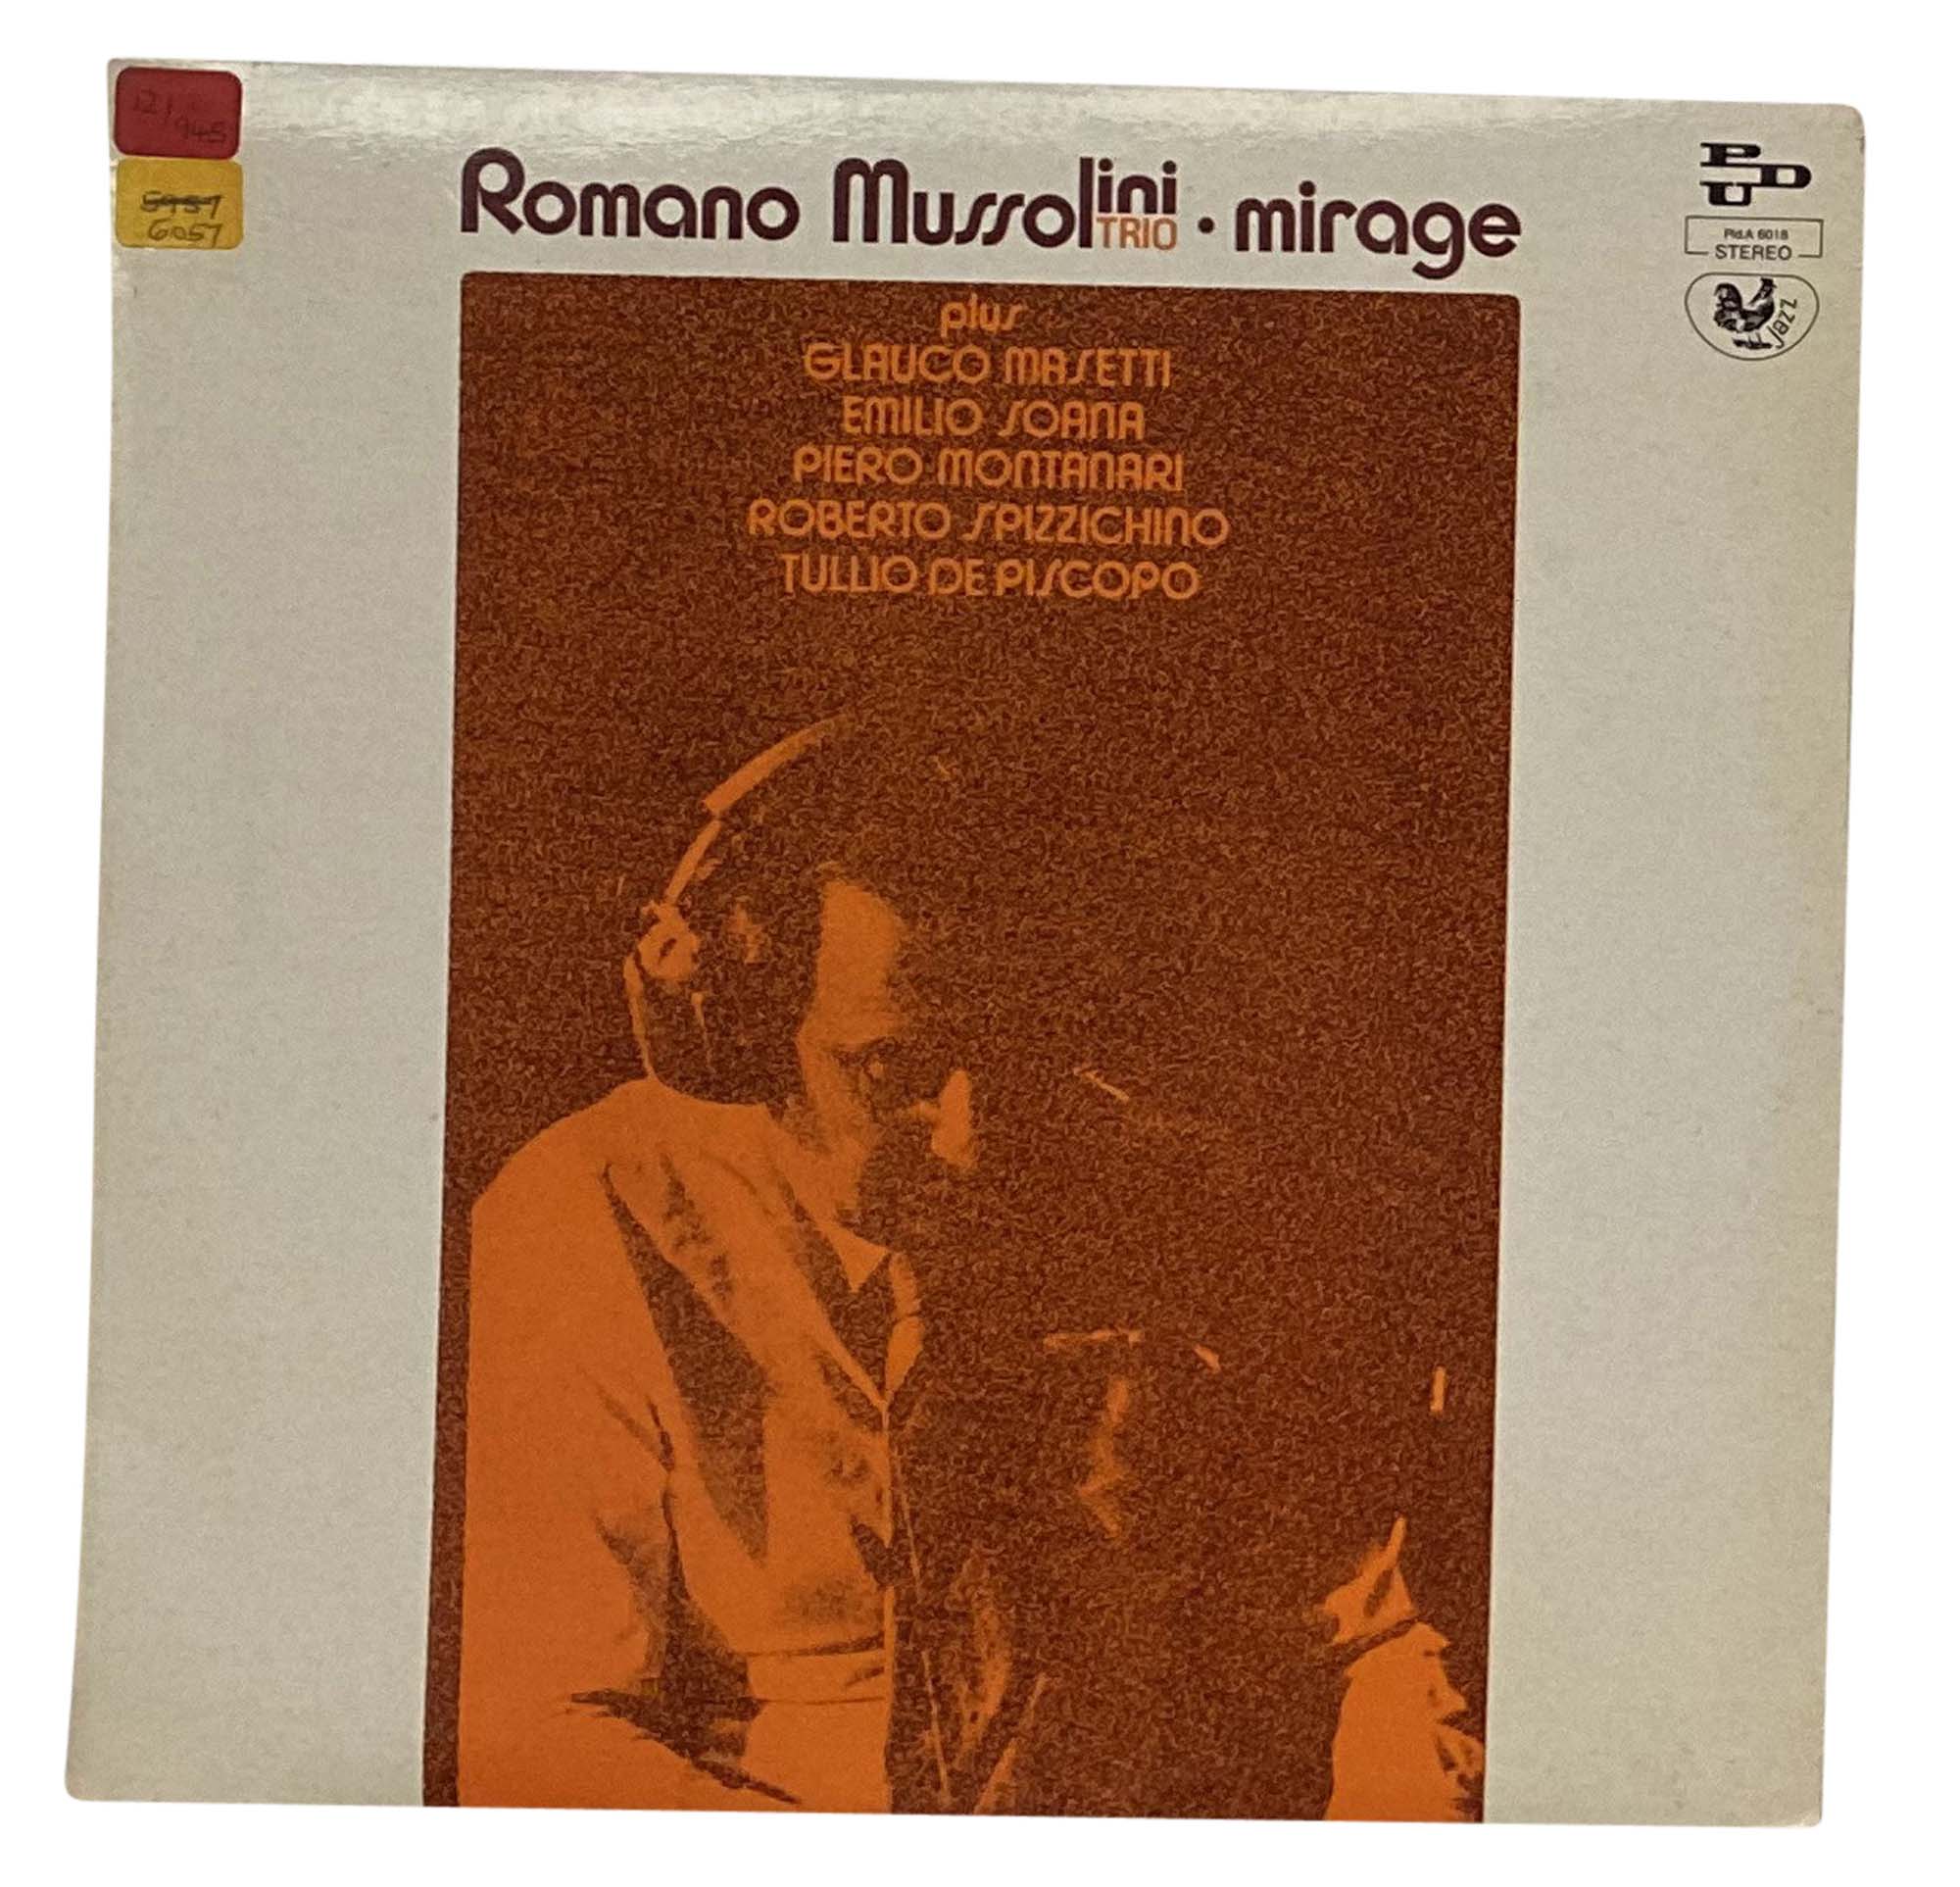 ROMANO MUSSOLINI TRIO - MIRAGE (PDU RECORDS - PLD A 6018).